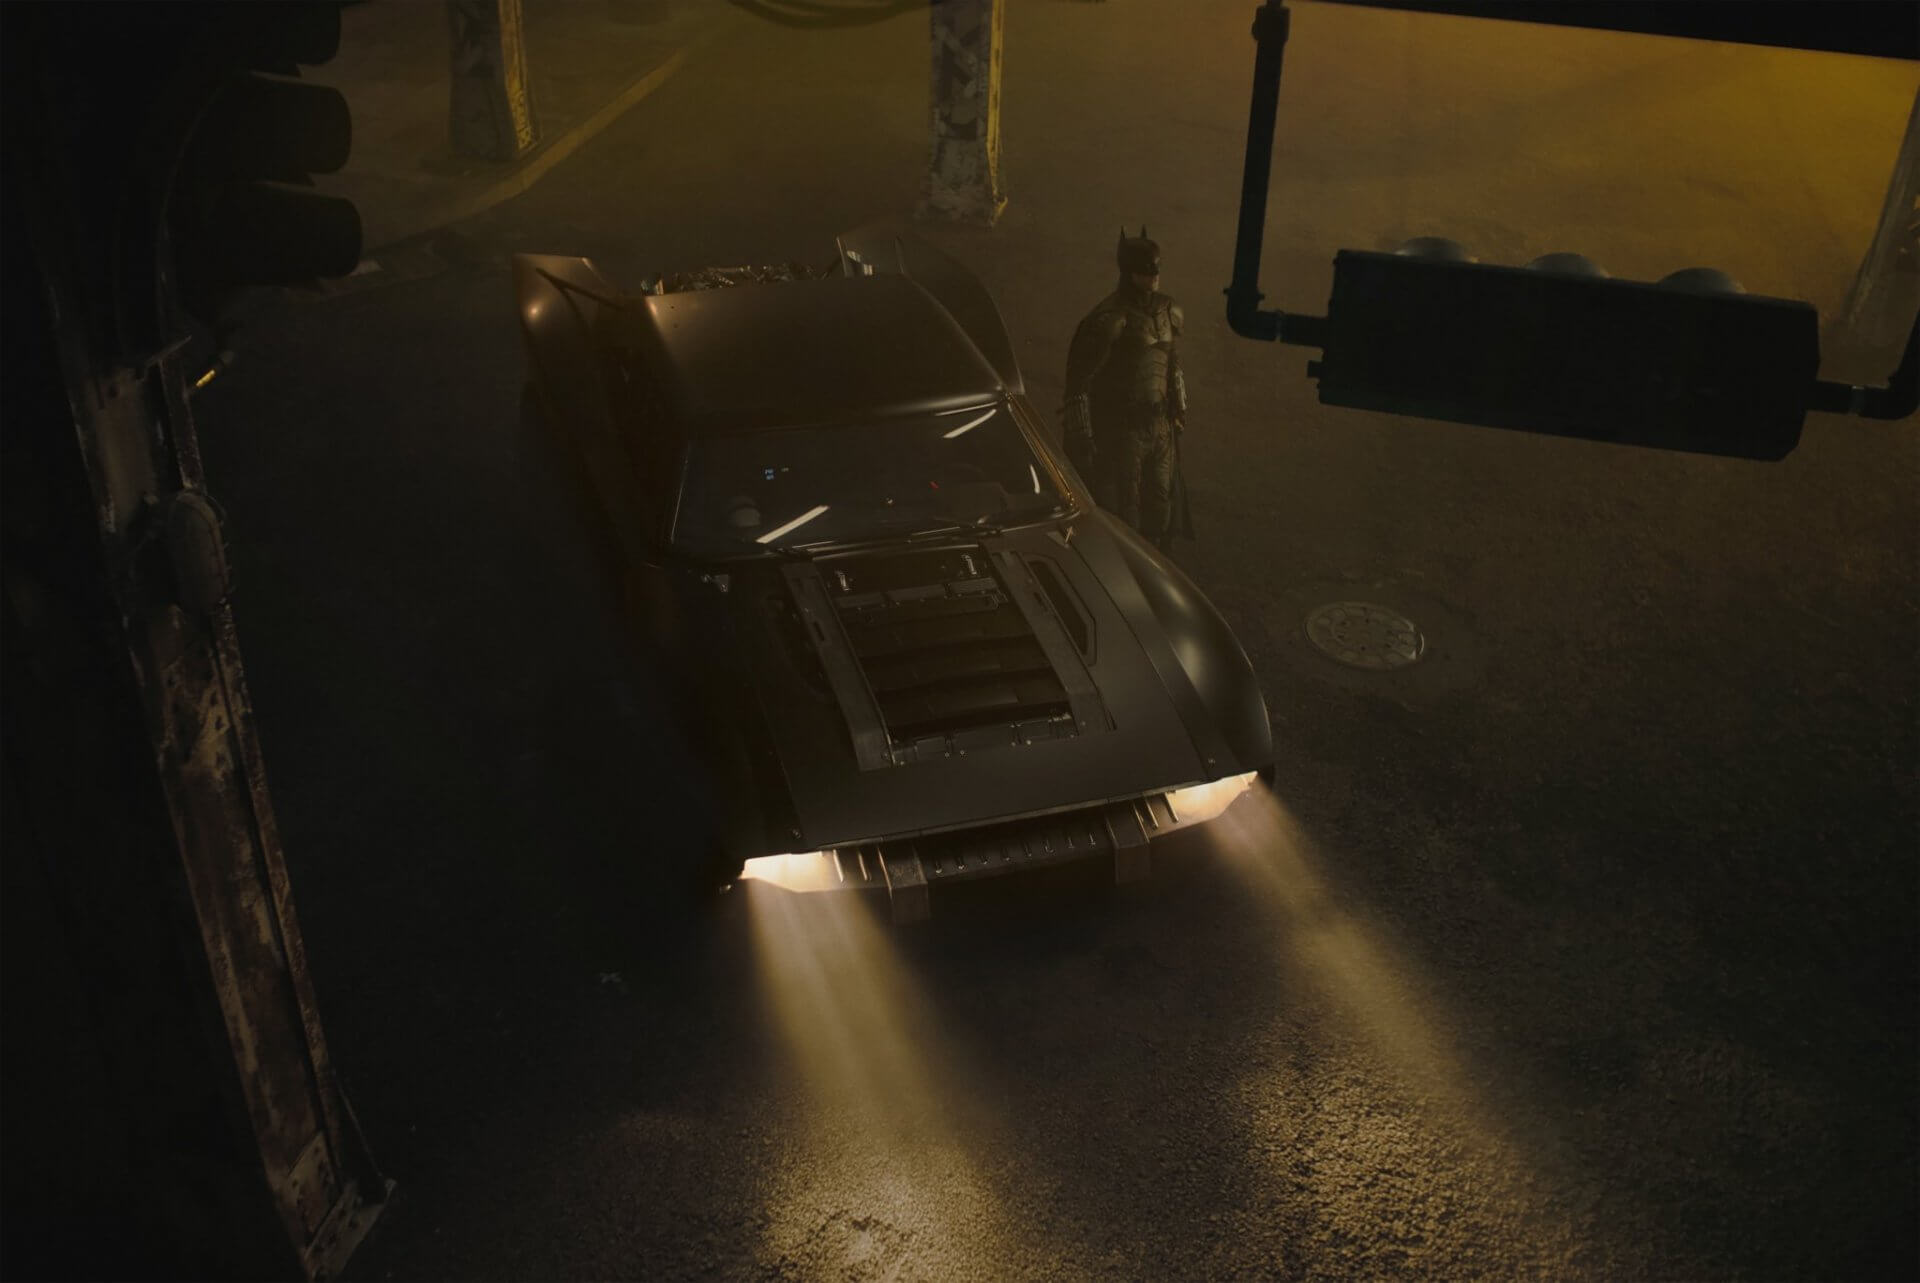 Em Batman, Reeves traz uma interpretação diferente do Batmóvel em relação aos filmes de Christopher Nolan - e, ainda assim, é memorável (crédito: divulgação / Warner Bros.)